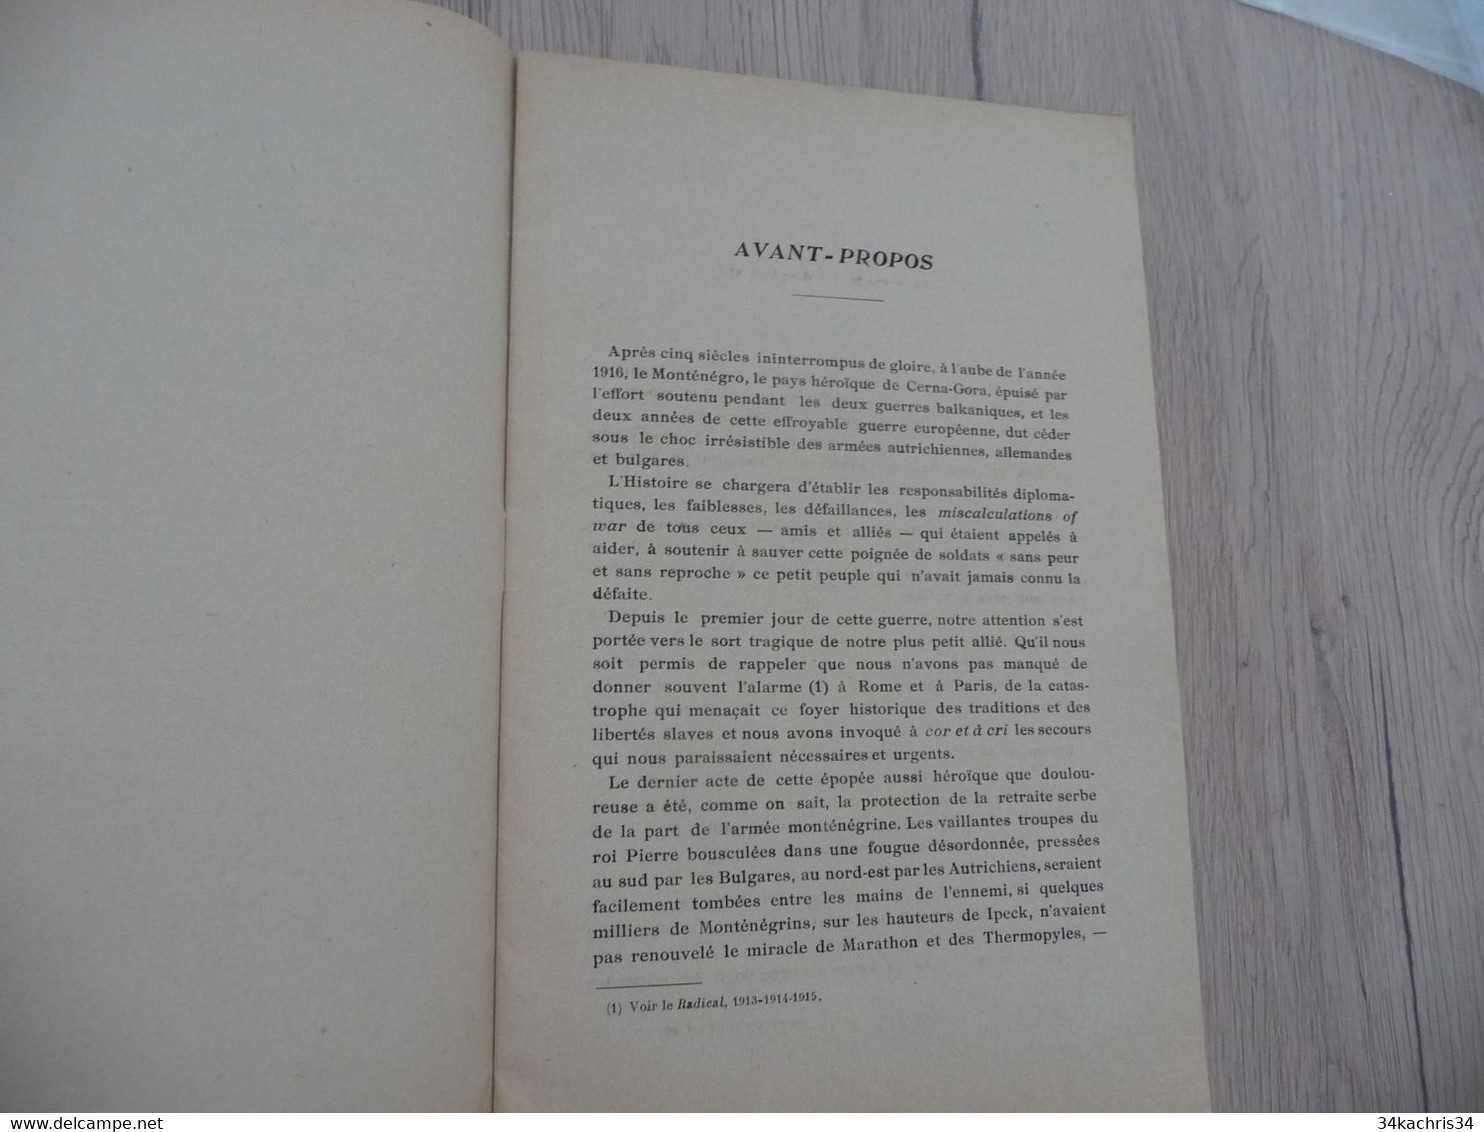 1917 réservée au corps diplomatique + lettre manuscrit explicatif Boggiano Contre une Grande Calomnie pour le Monténégro